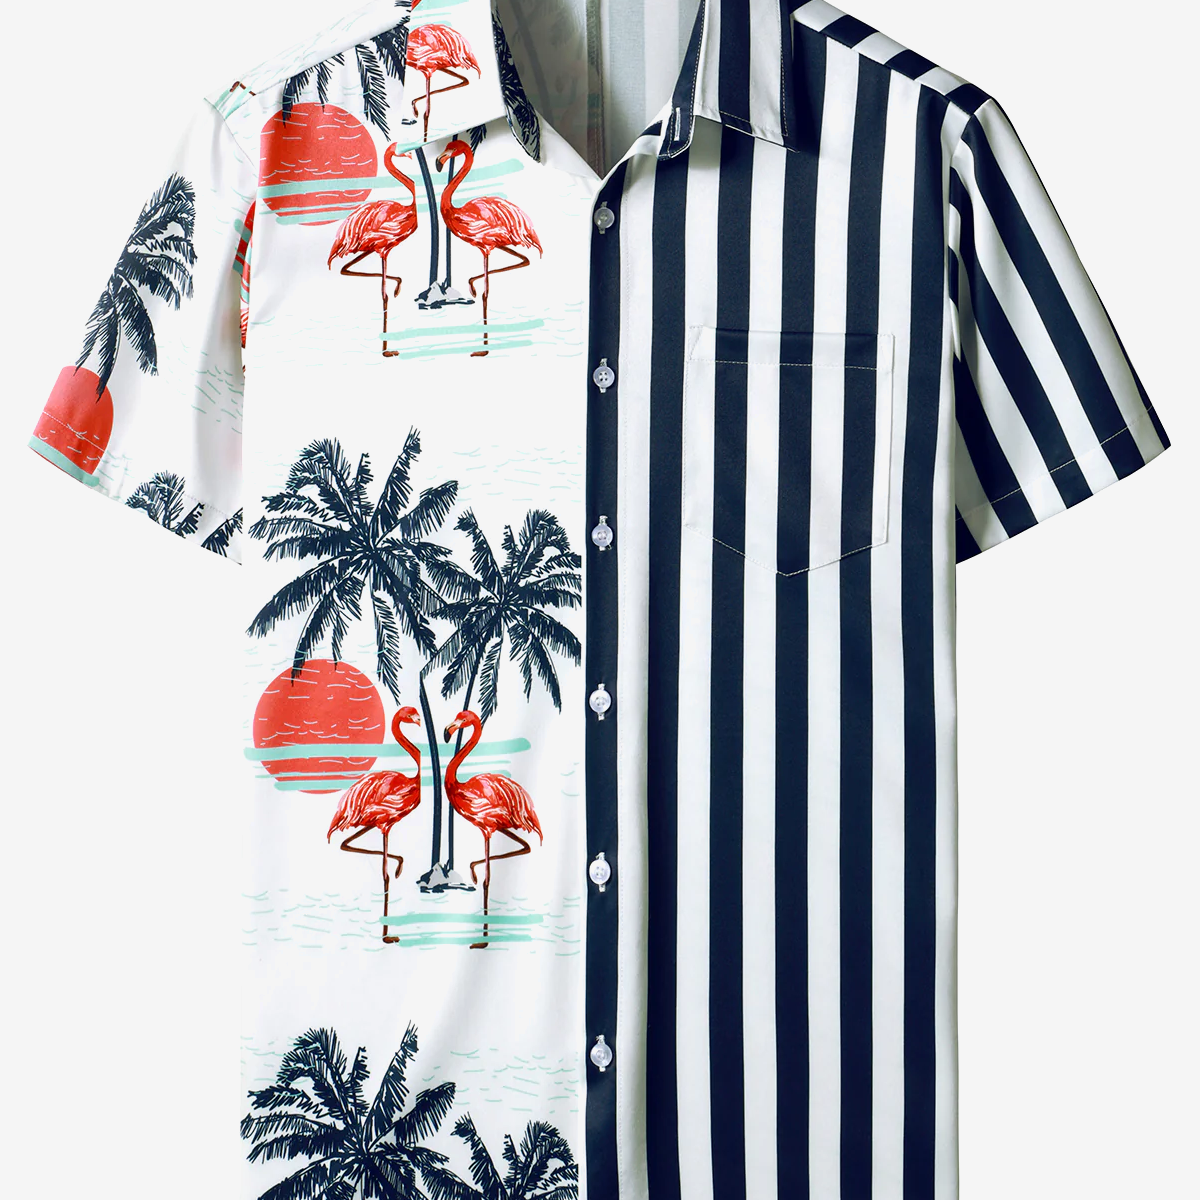 Men's Navy Blue Striped And Flamingo Print Hawaiian Short Sleeve Aloha Shirt